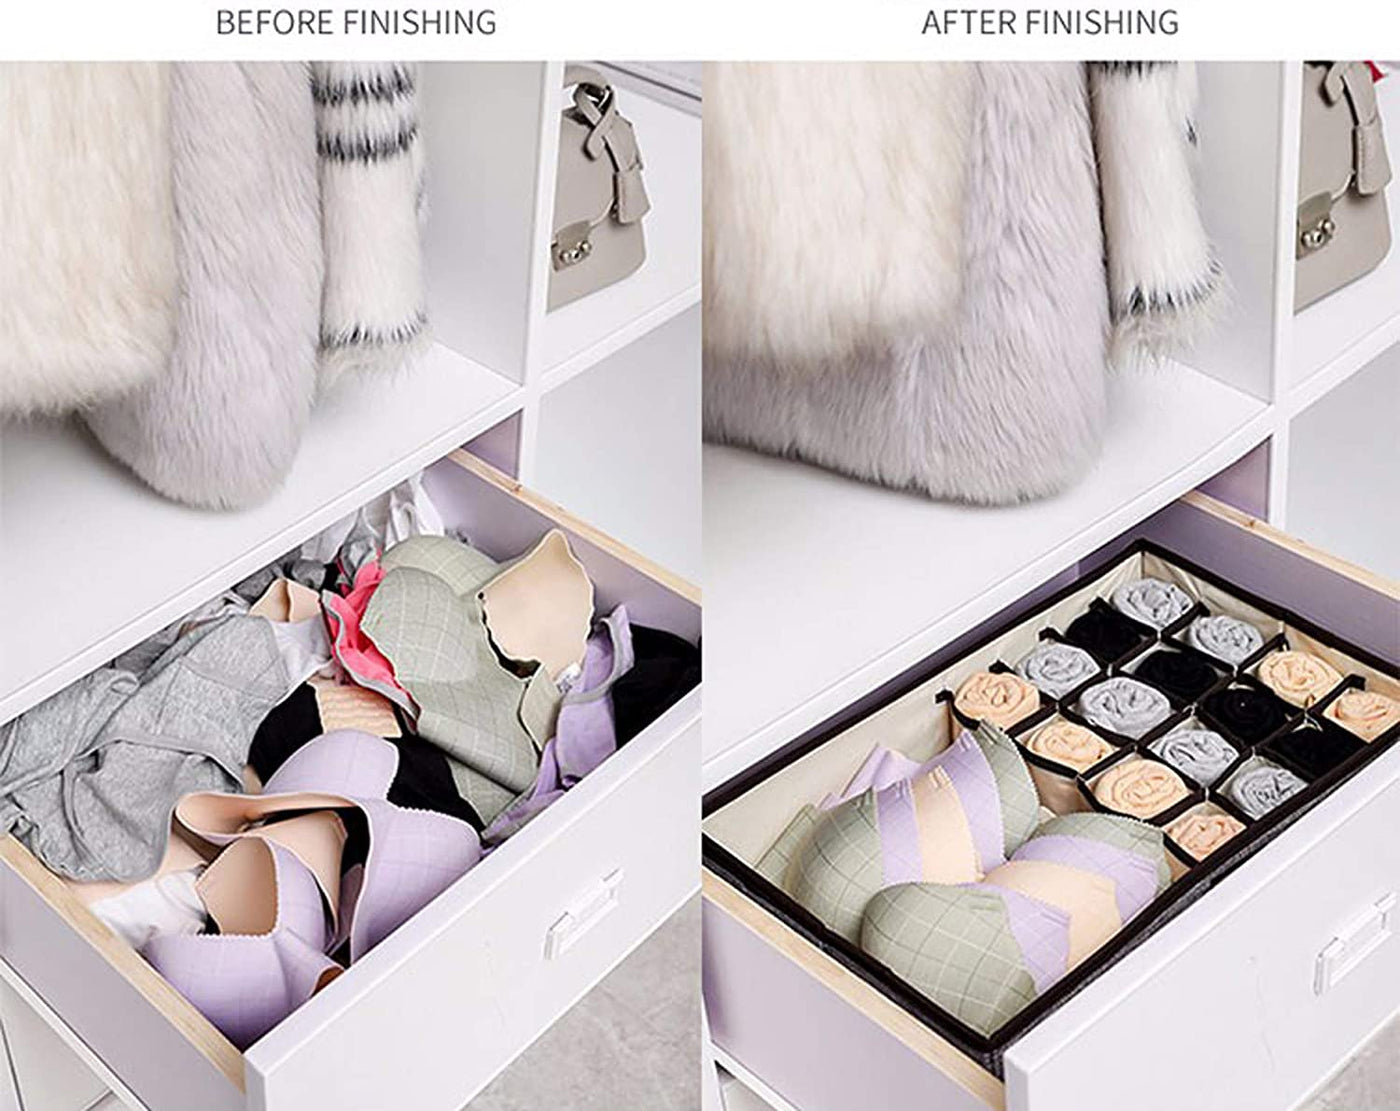 Innerwear Organizer 15+1 Compartment Non-Smell Non Woven Foldable Fabric Storage Box for Closet - Brown Fox